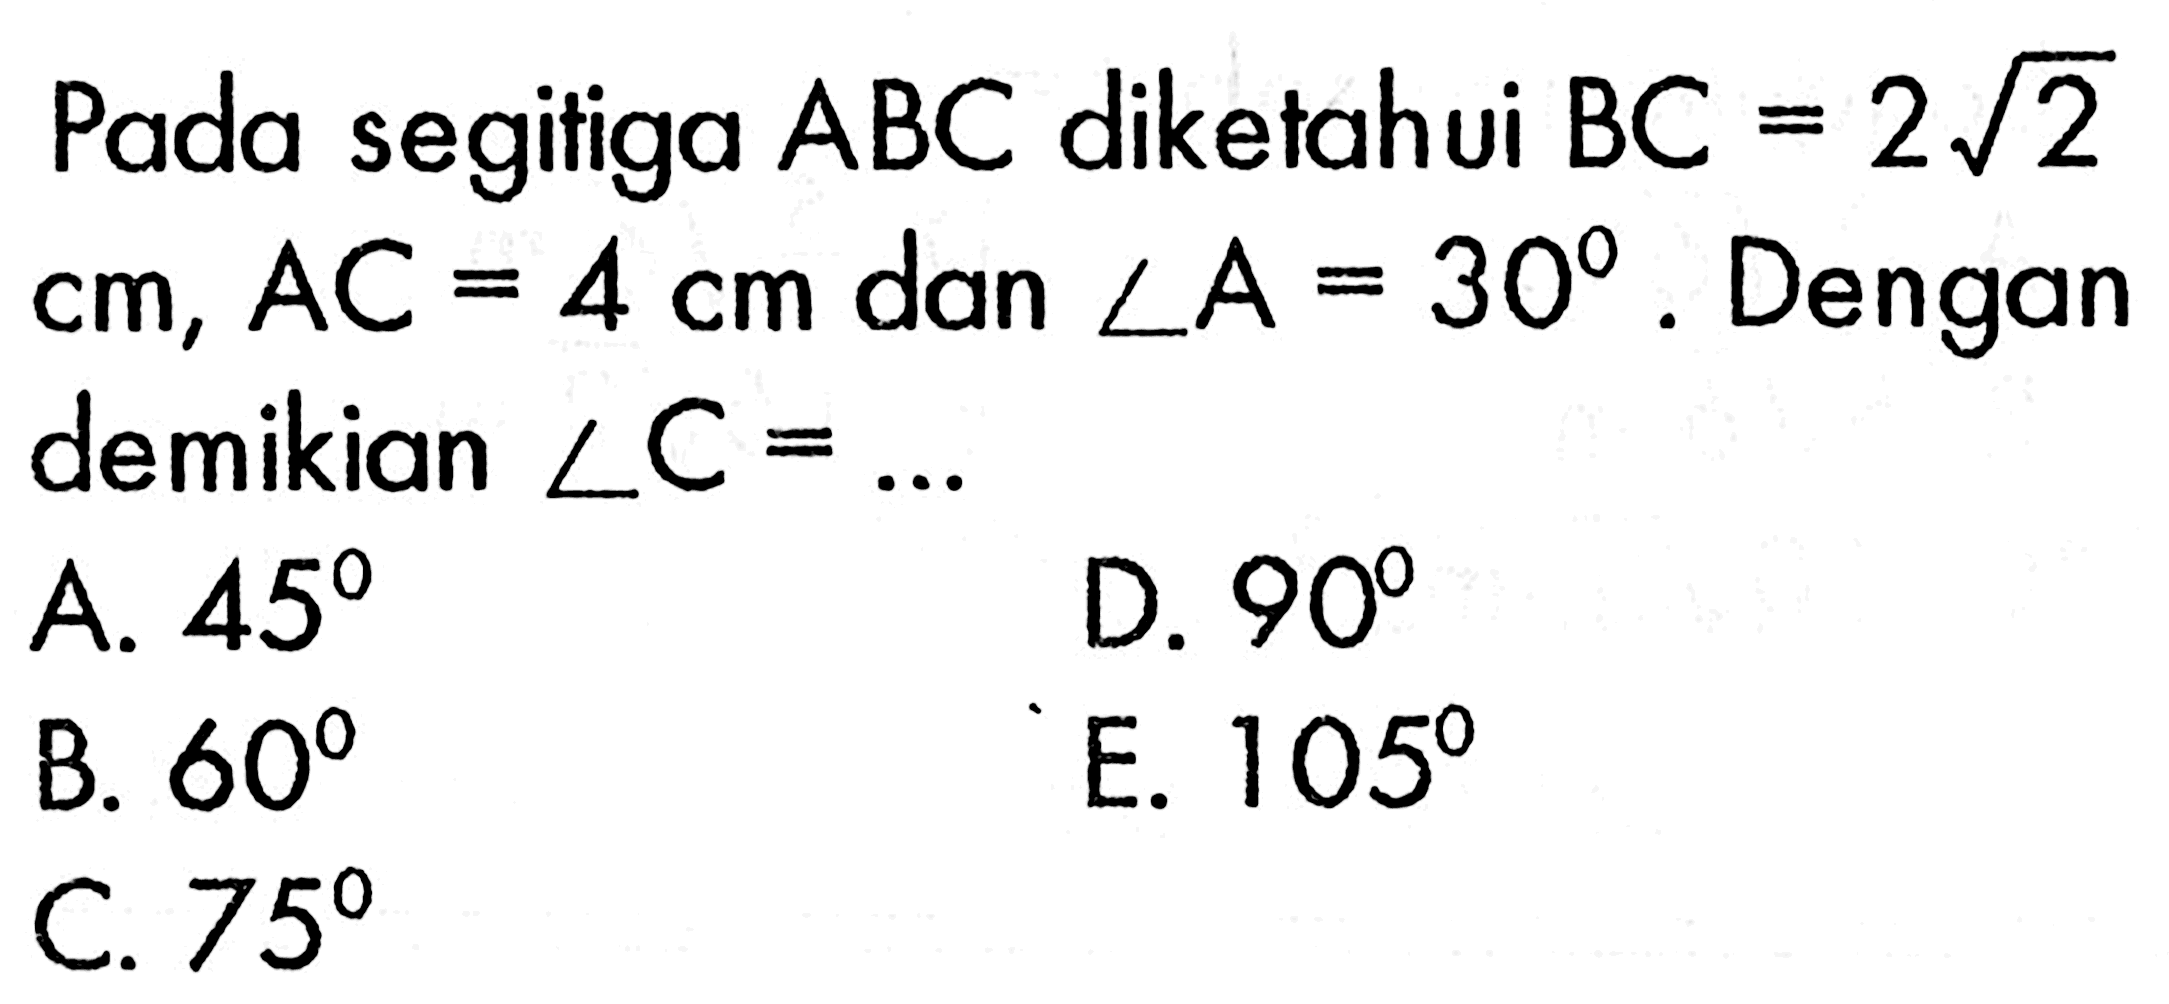 Pada segitiga  ABC  diketahui  BC=2 akar(2)   cm, AC=4 cm  dan  sudut A=30 .  Dengan demikian  sudut C=.... 